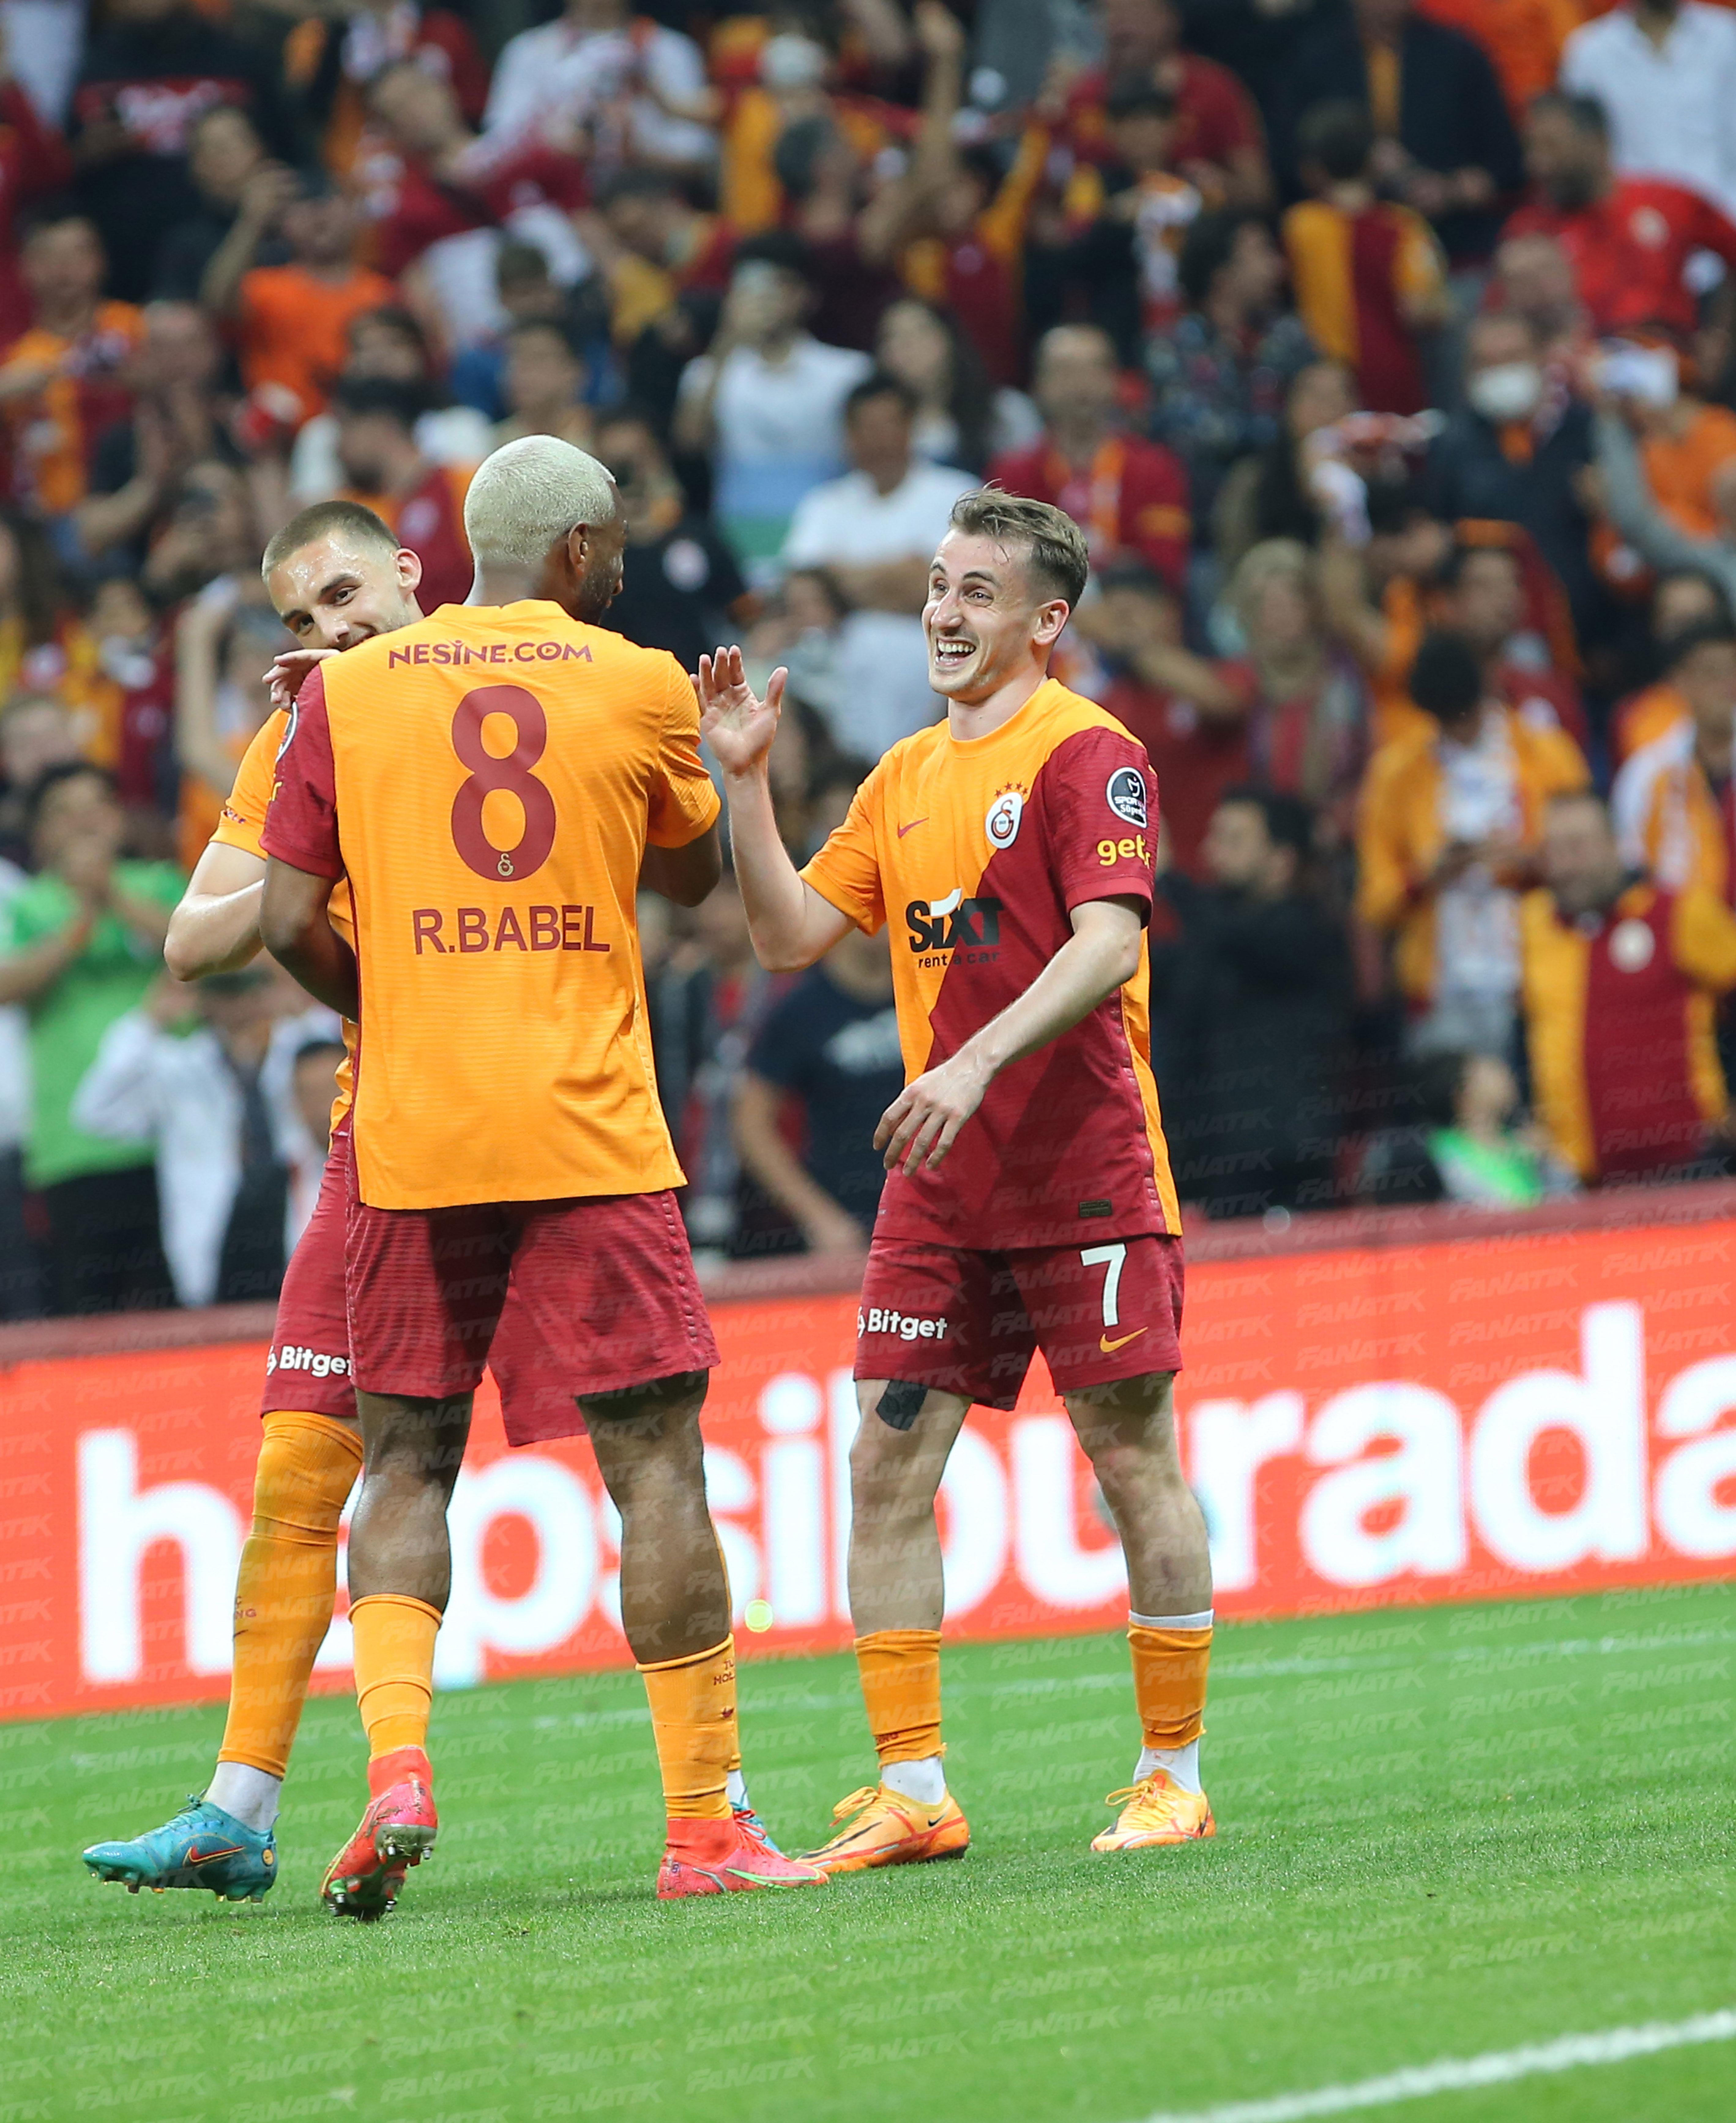 (ÖZET) Galatasaray-Adana Demirspor maç sonucu: 3-2